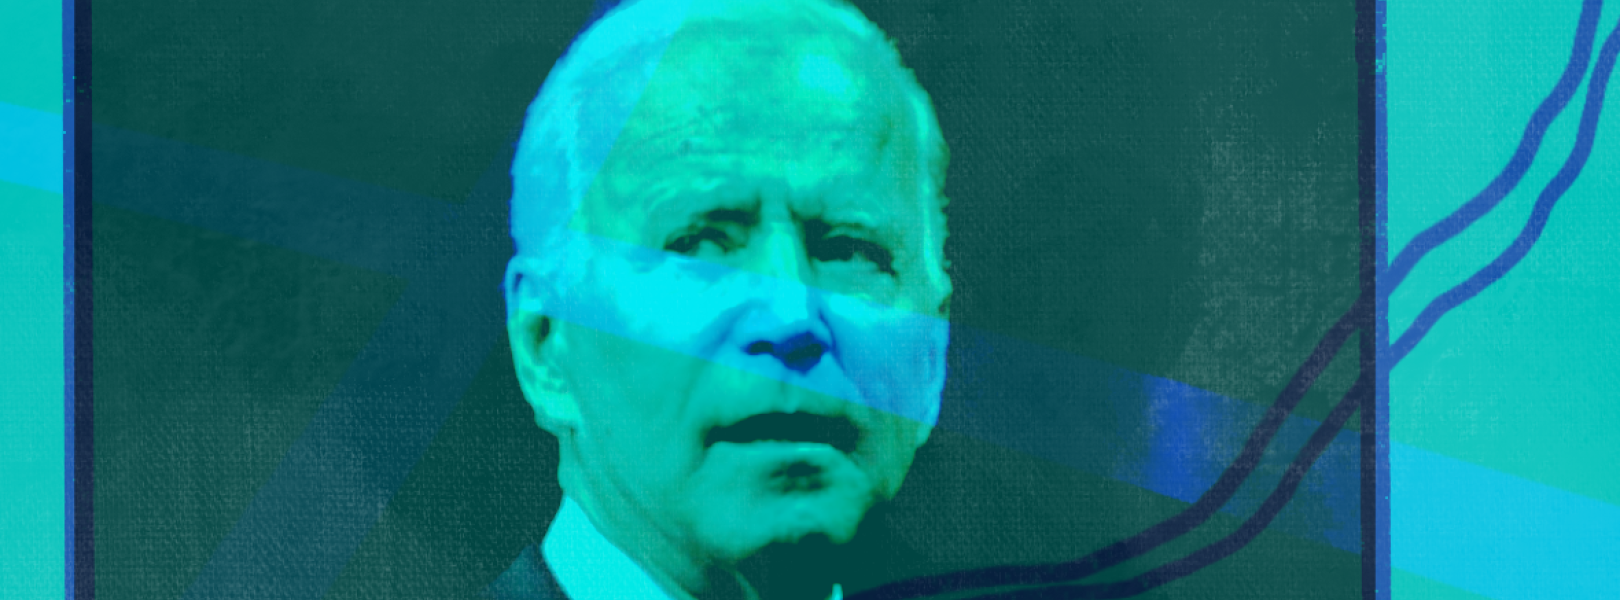 Biden on a blue background